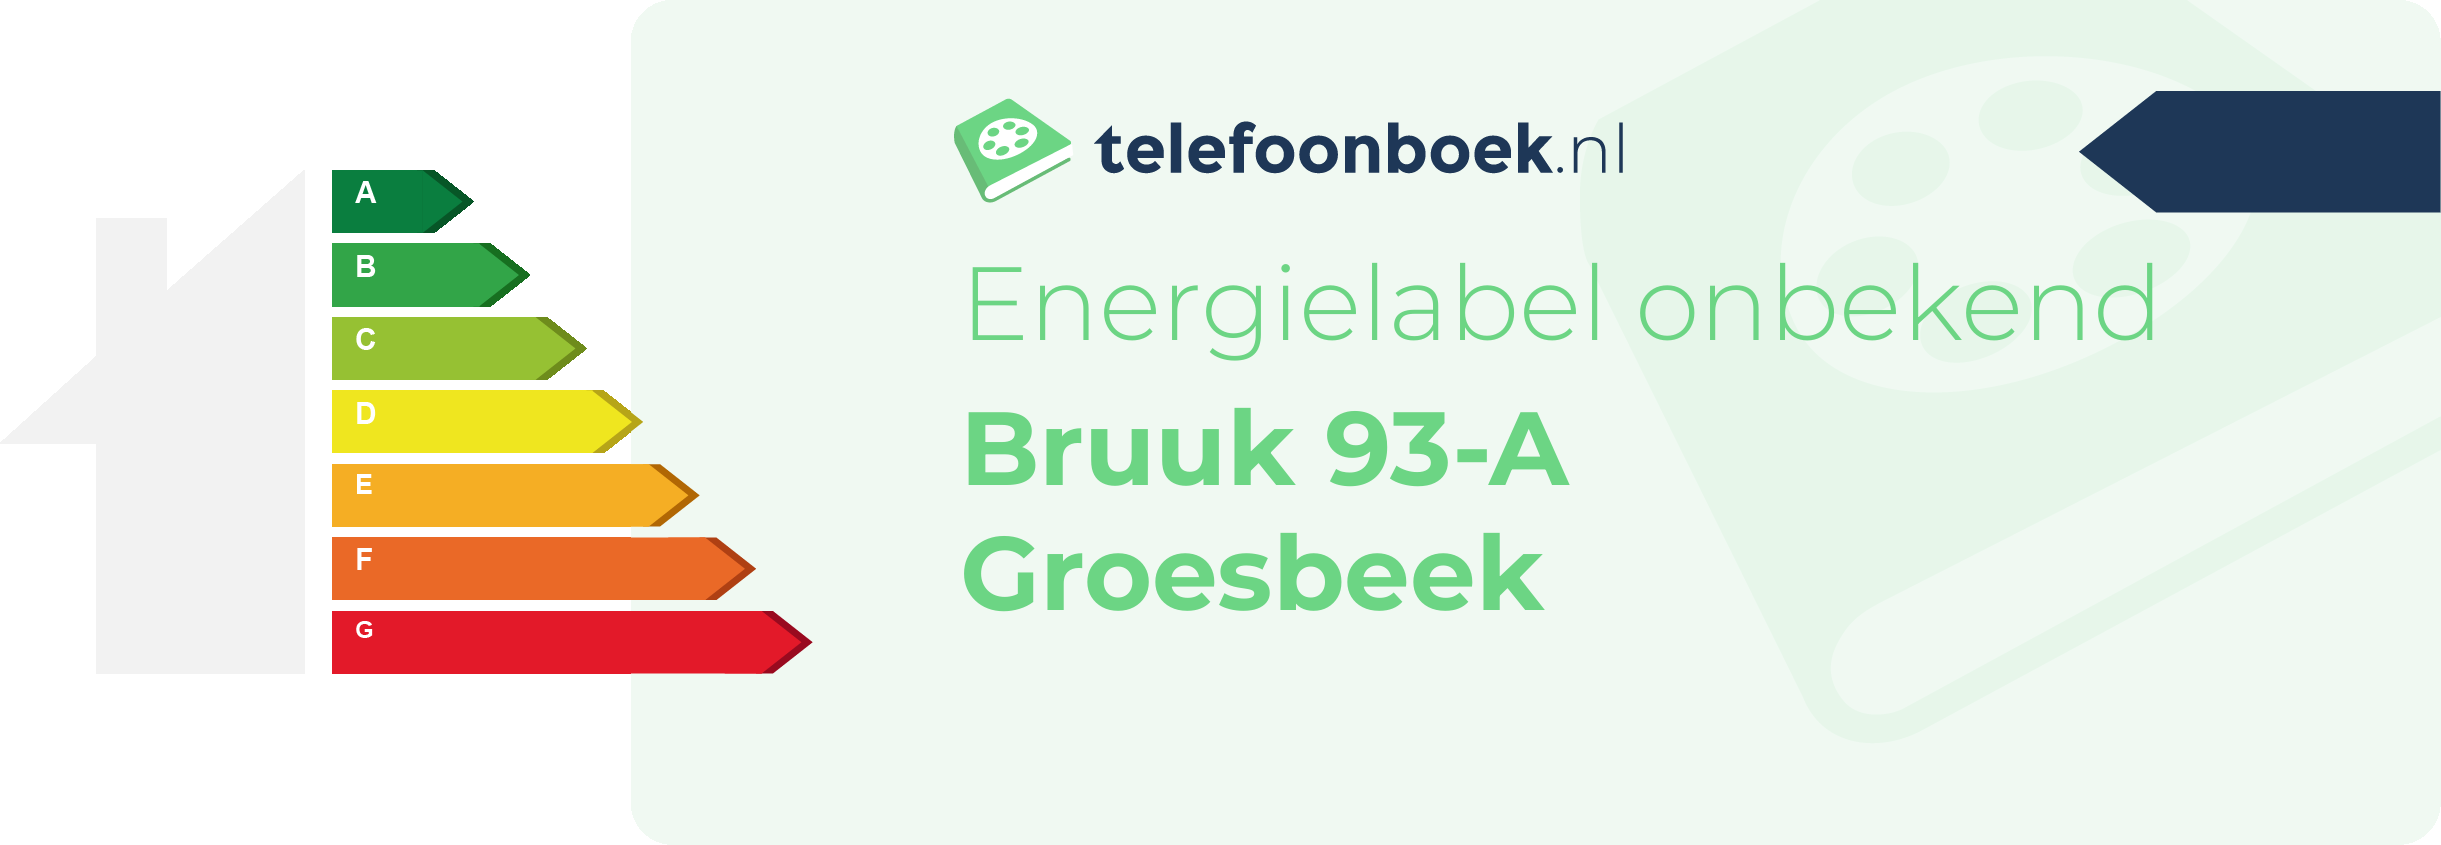 Energielabel Bruuk 93-A Groesbeek